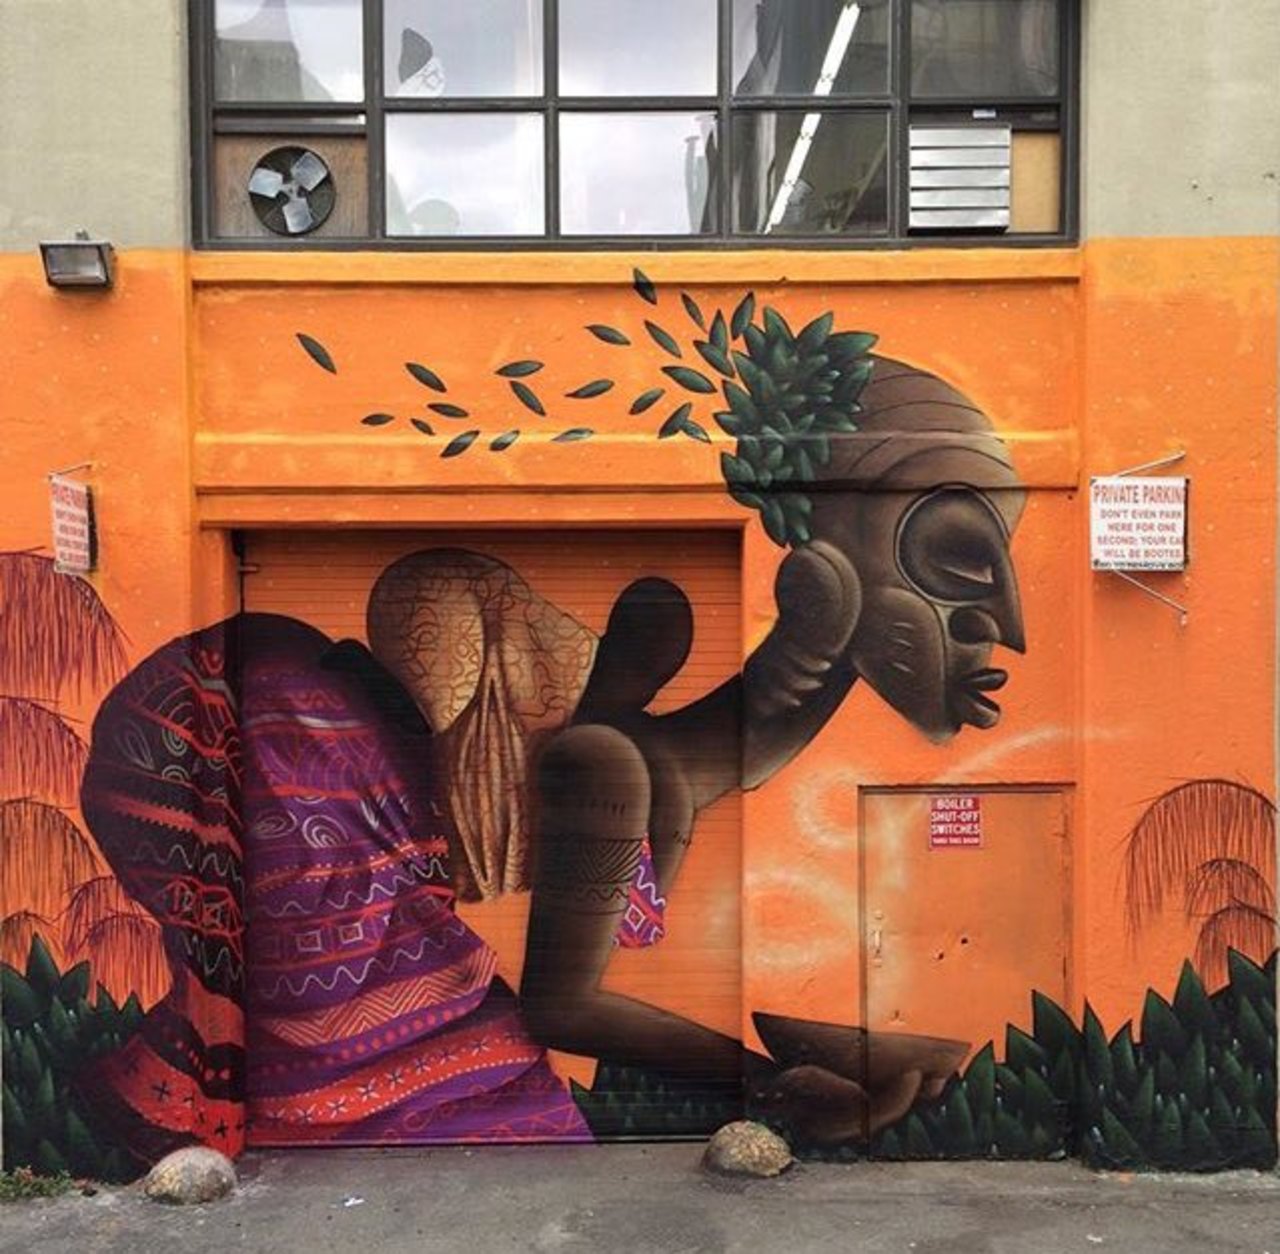 RT @GoogleStreetArt: New Street Art by Alexandre Keto in NYC 

#art #graffiti #mural #streetart https://t.co/OzMg3o0lc9